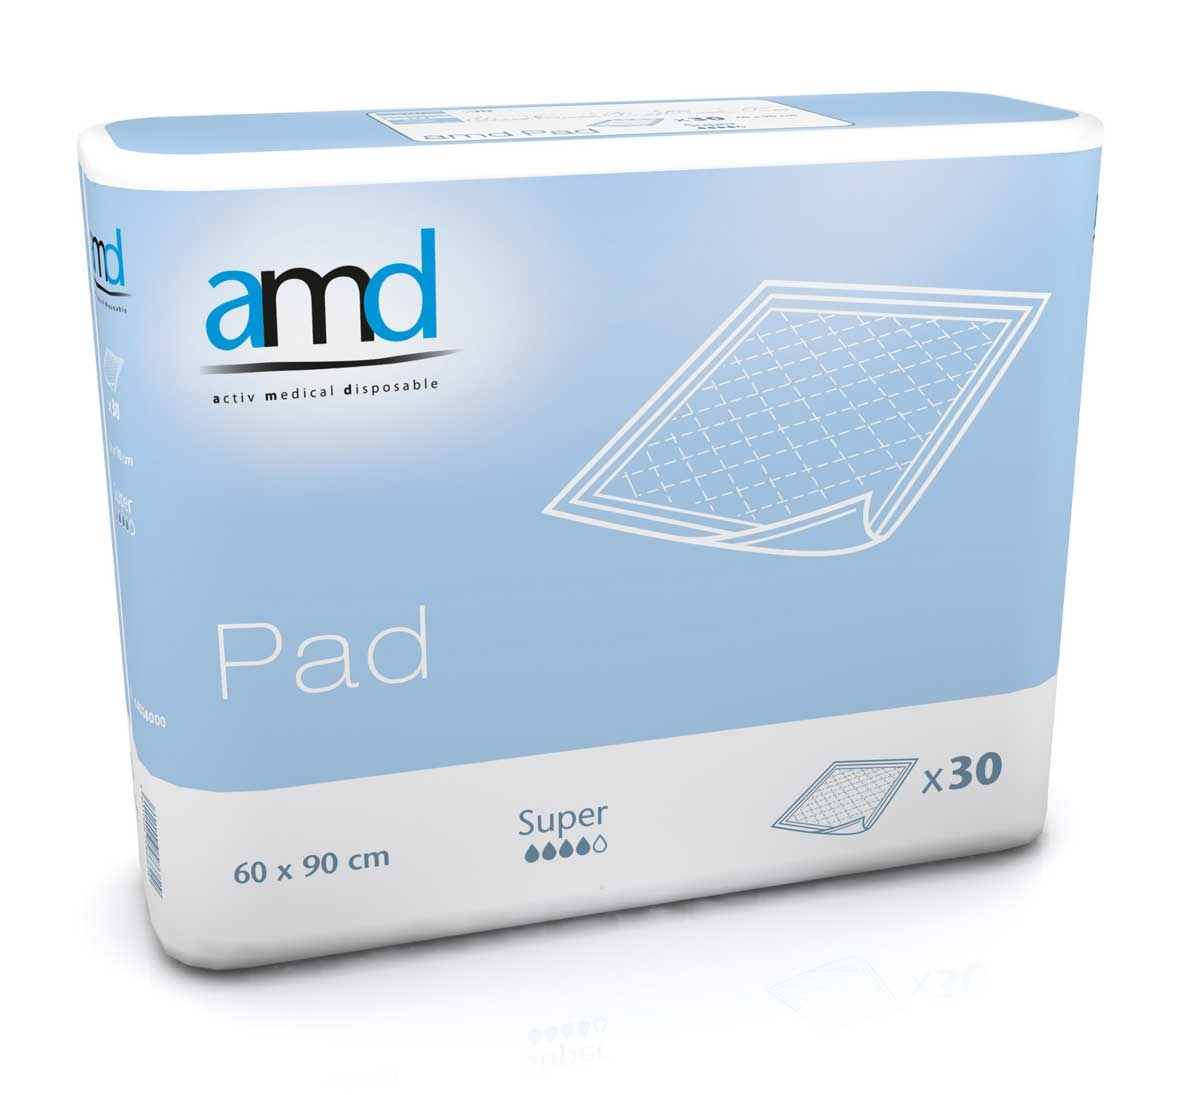 AMD PAD - Inkontinenzauflage - SUPER - 60 x 90cm - 30 Stück Packung